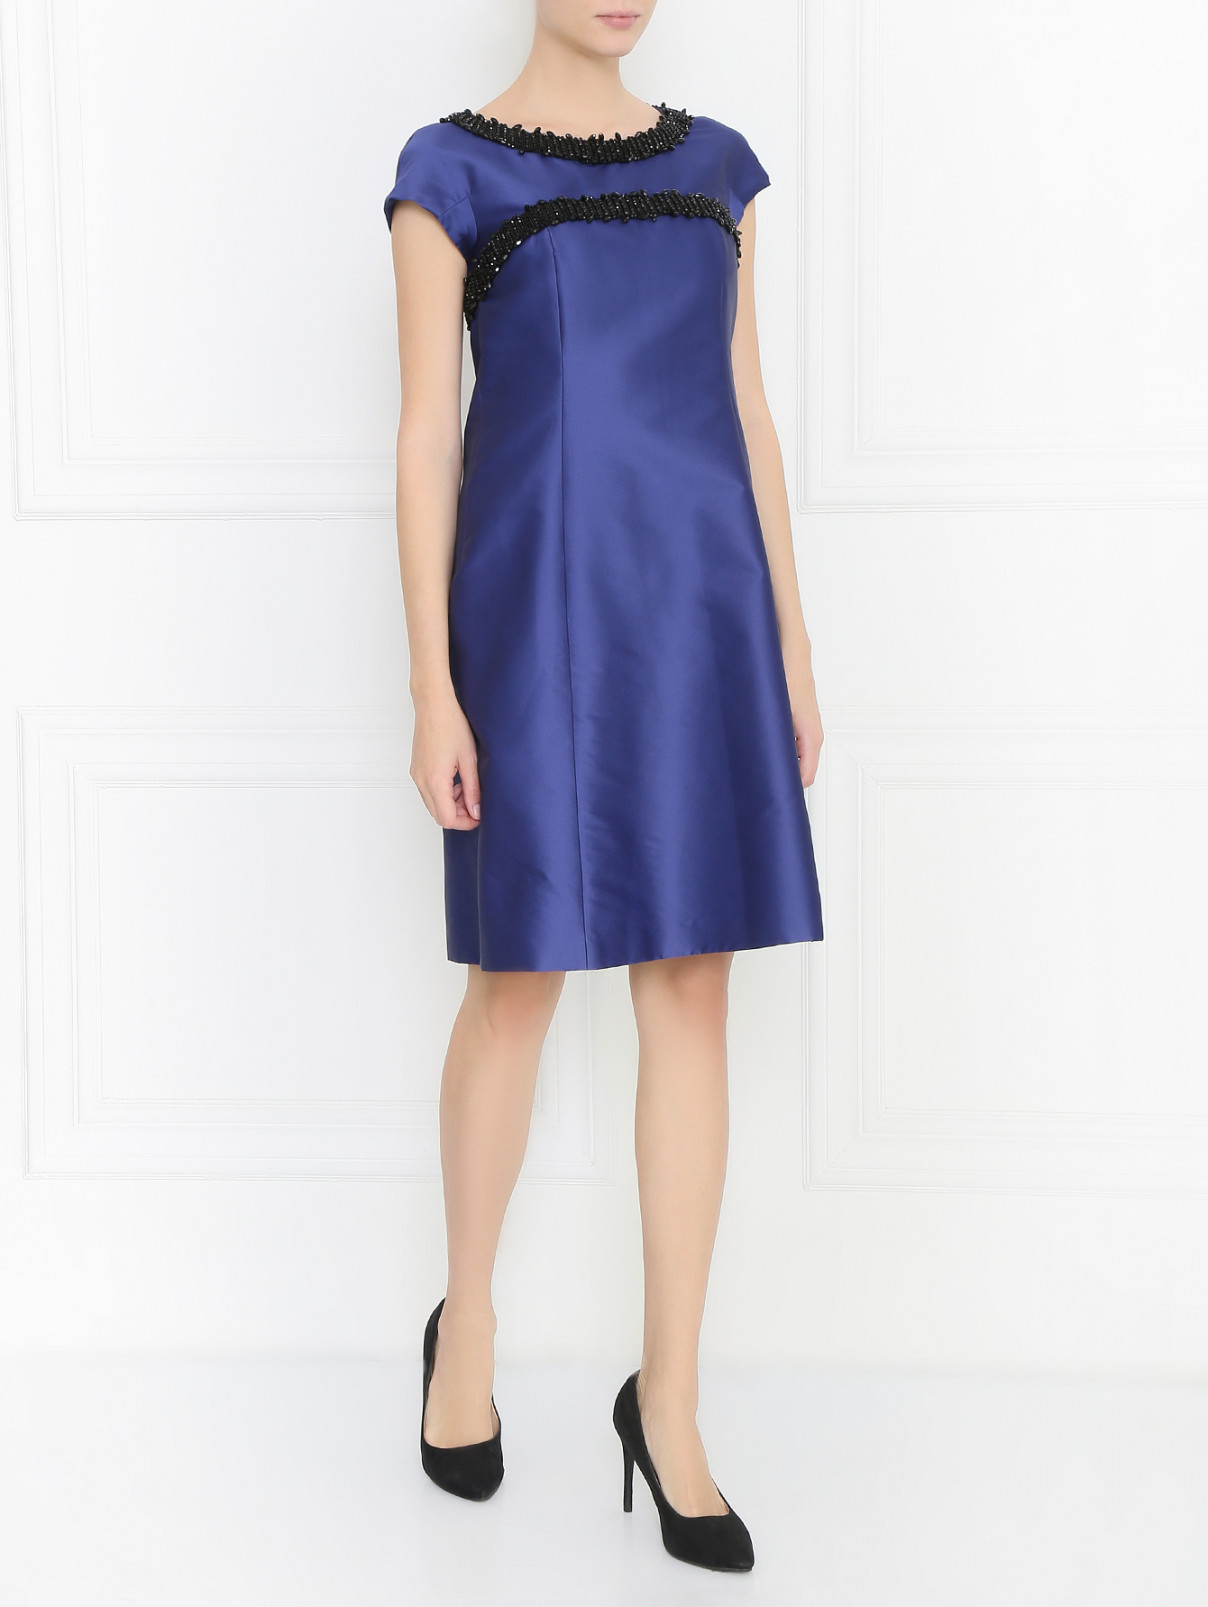 Платье декорированное бисером Weekend Max Mara  –  Модель Общий вид  – Цвет:  Синий